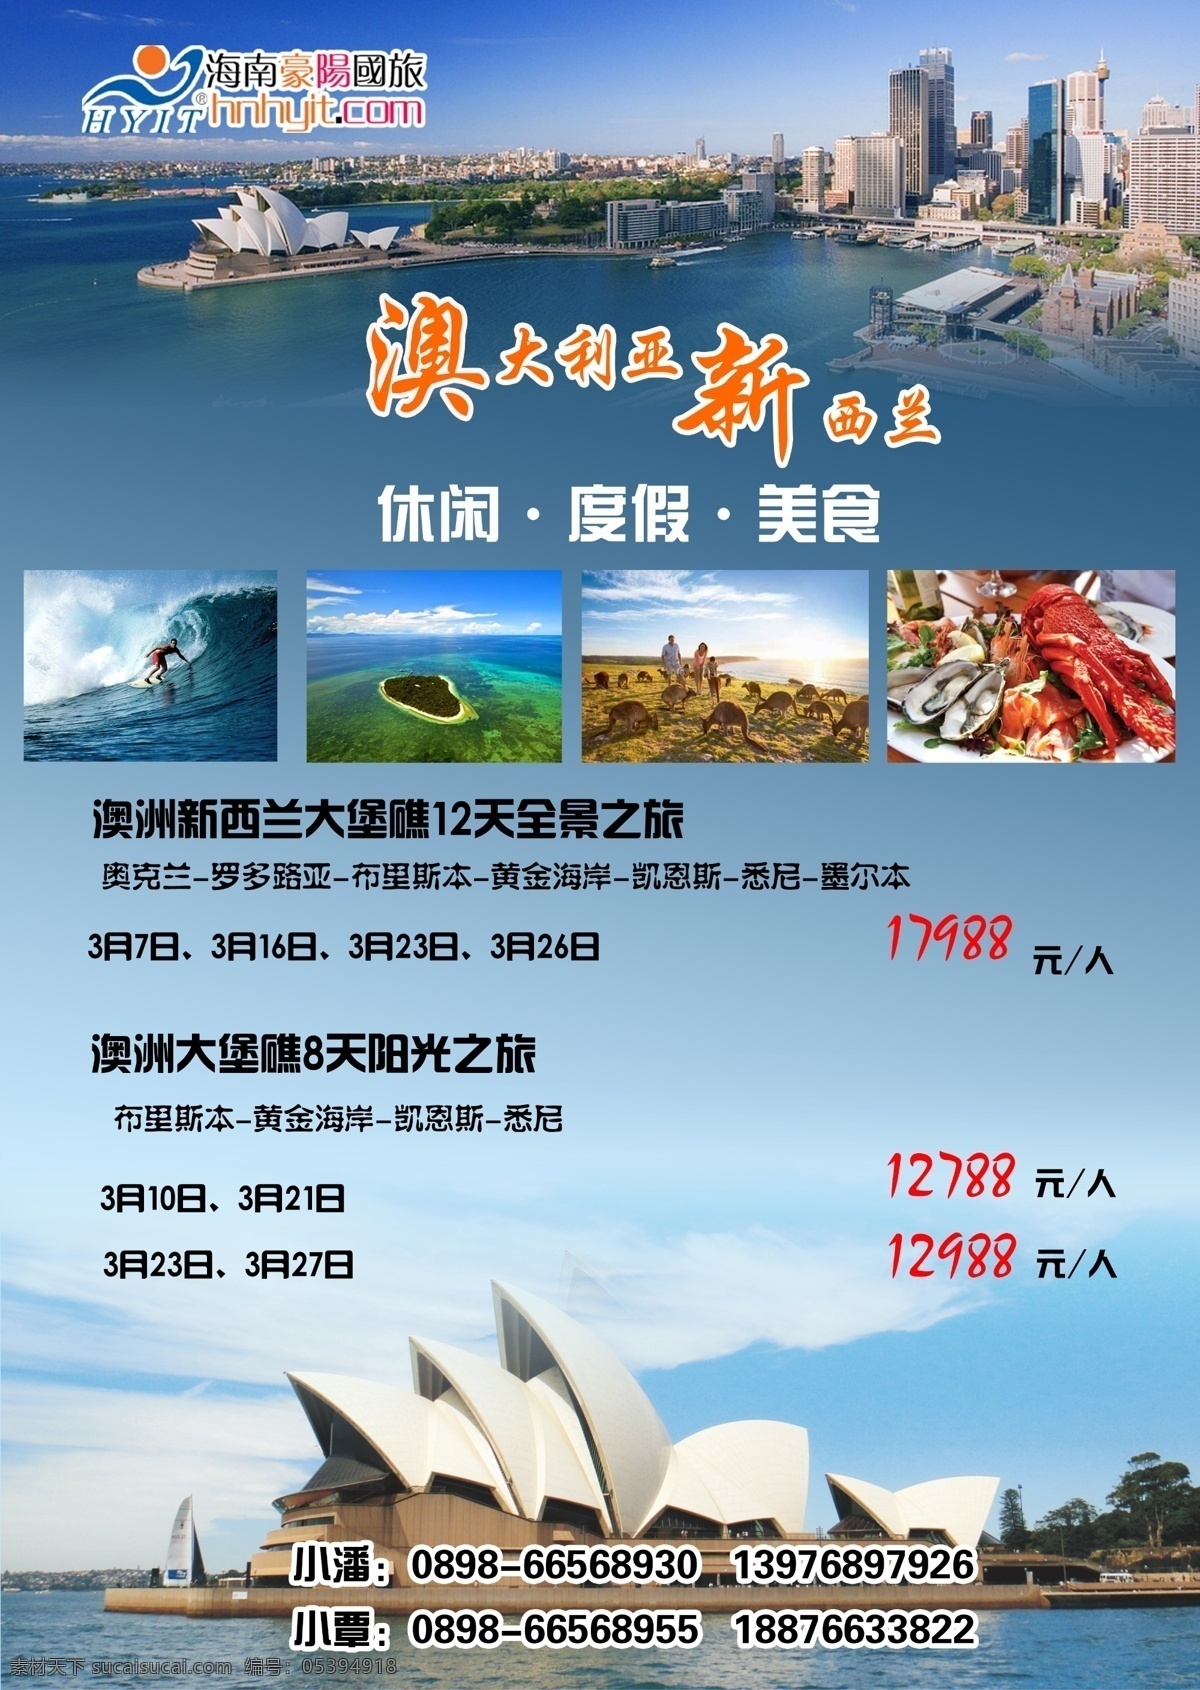 澳大利亚 新西兰 澳新 澳新旅游海报 澳新旅游 澳大利亚旅游 澳大利亚海报 新西兰旅游 旅游相关 分层 白色